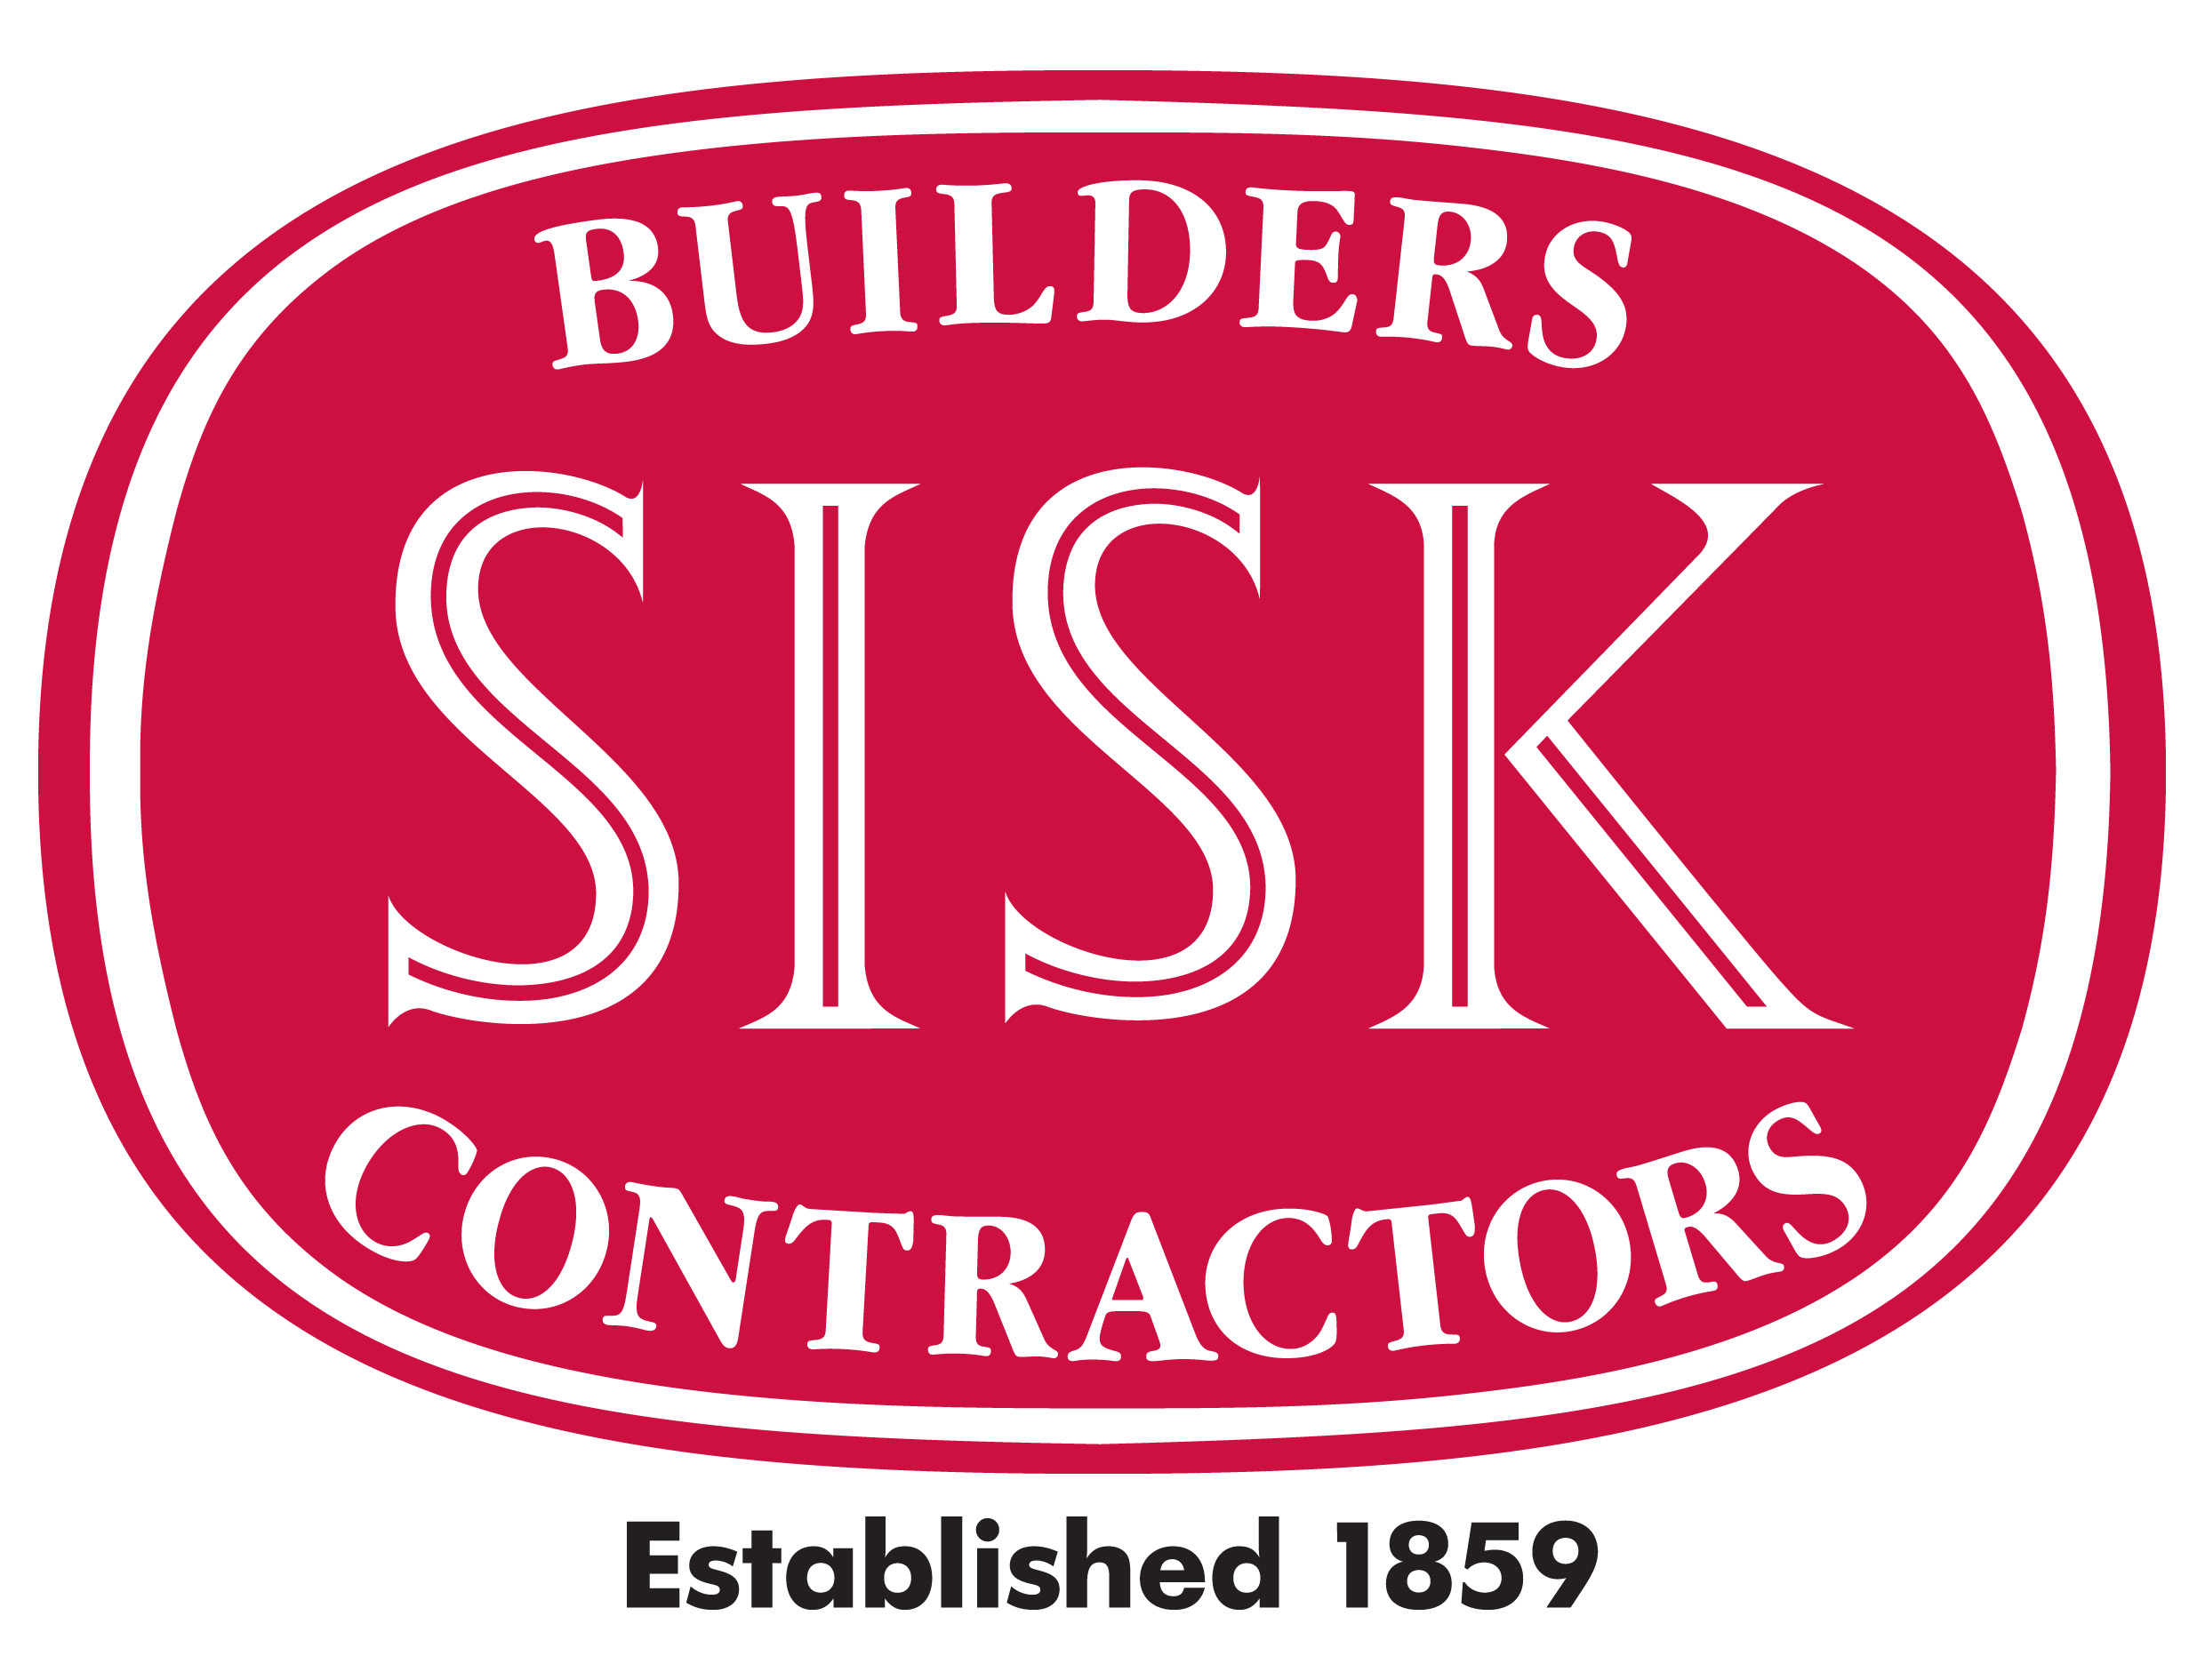 Sisk-Logo